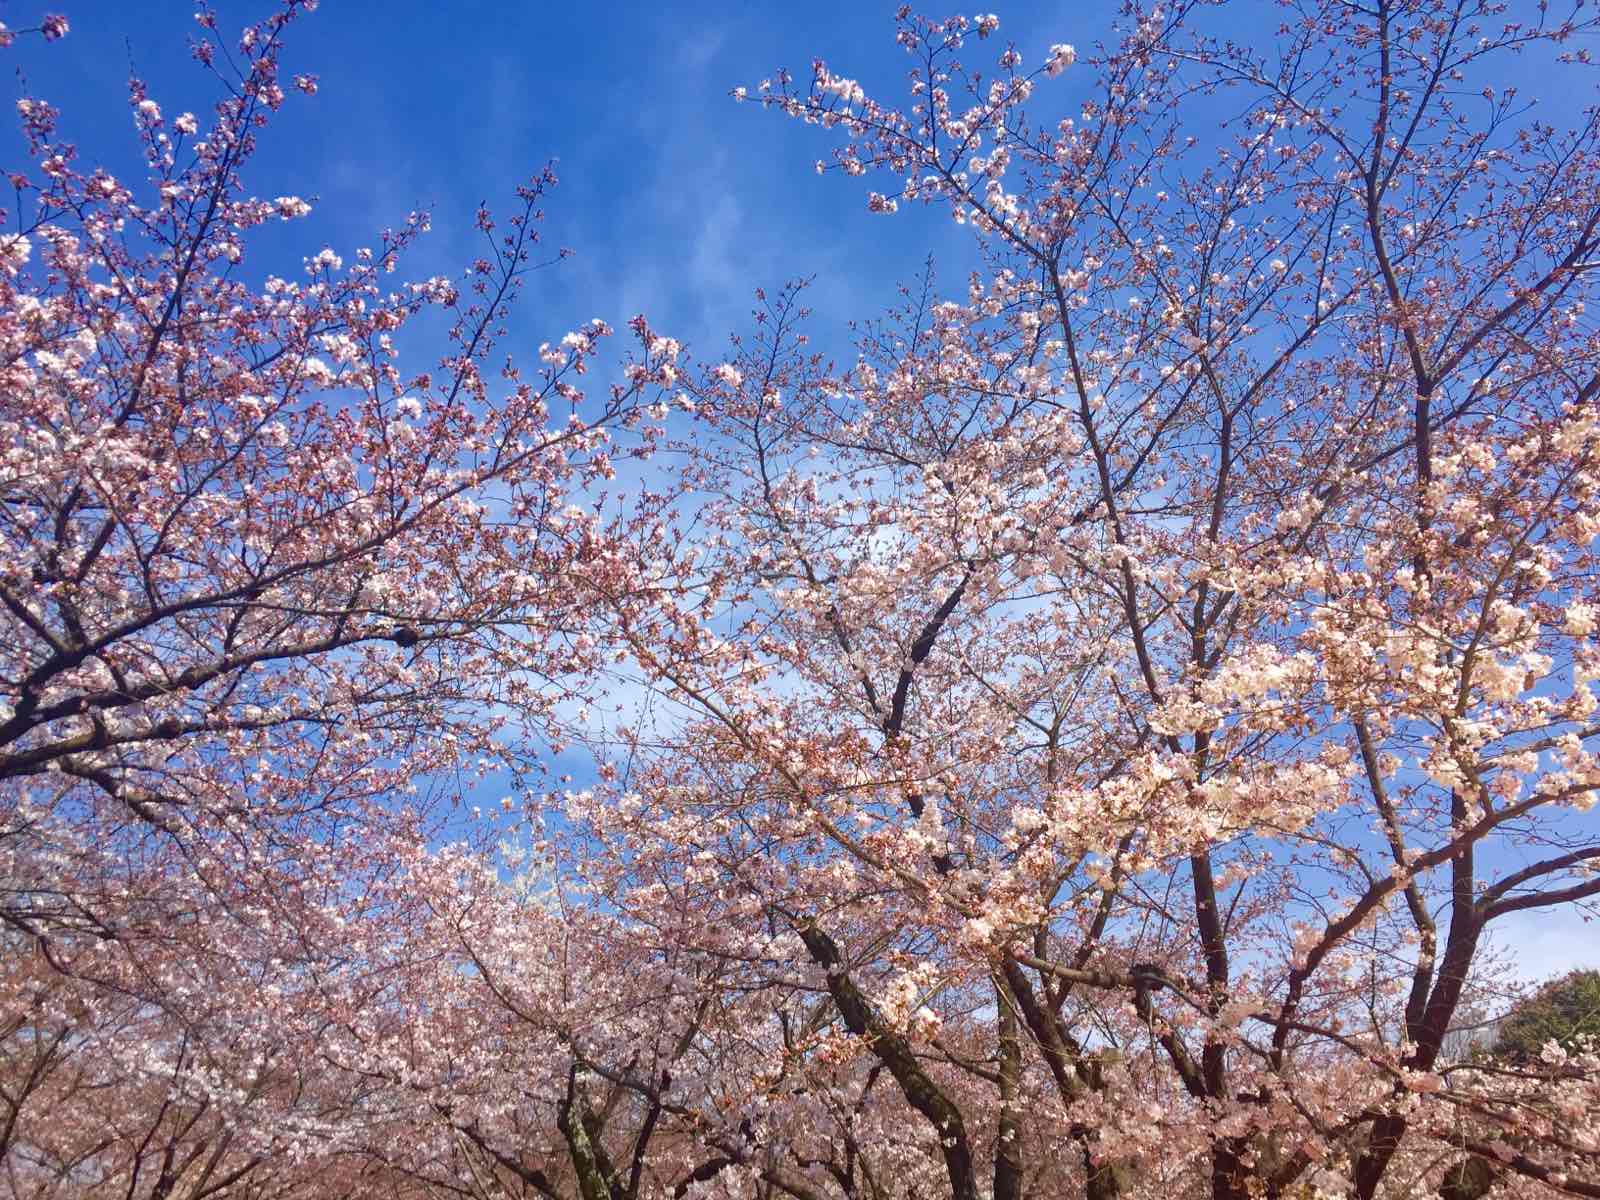 很少有人攻略这个小神社，但在樱花盛开的时候来到京都，平野神社是绝对不可